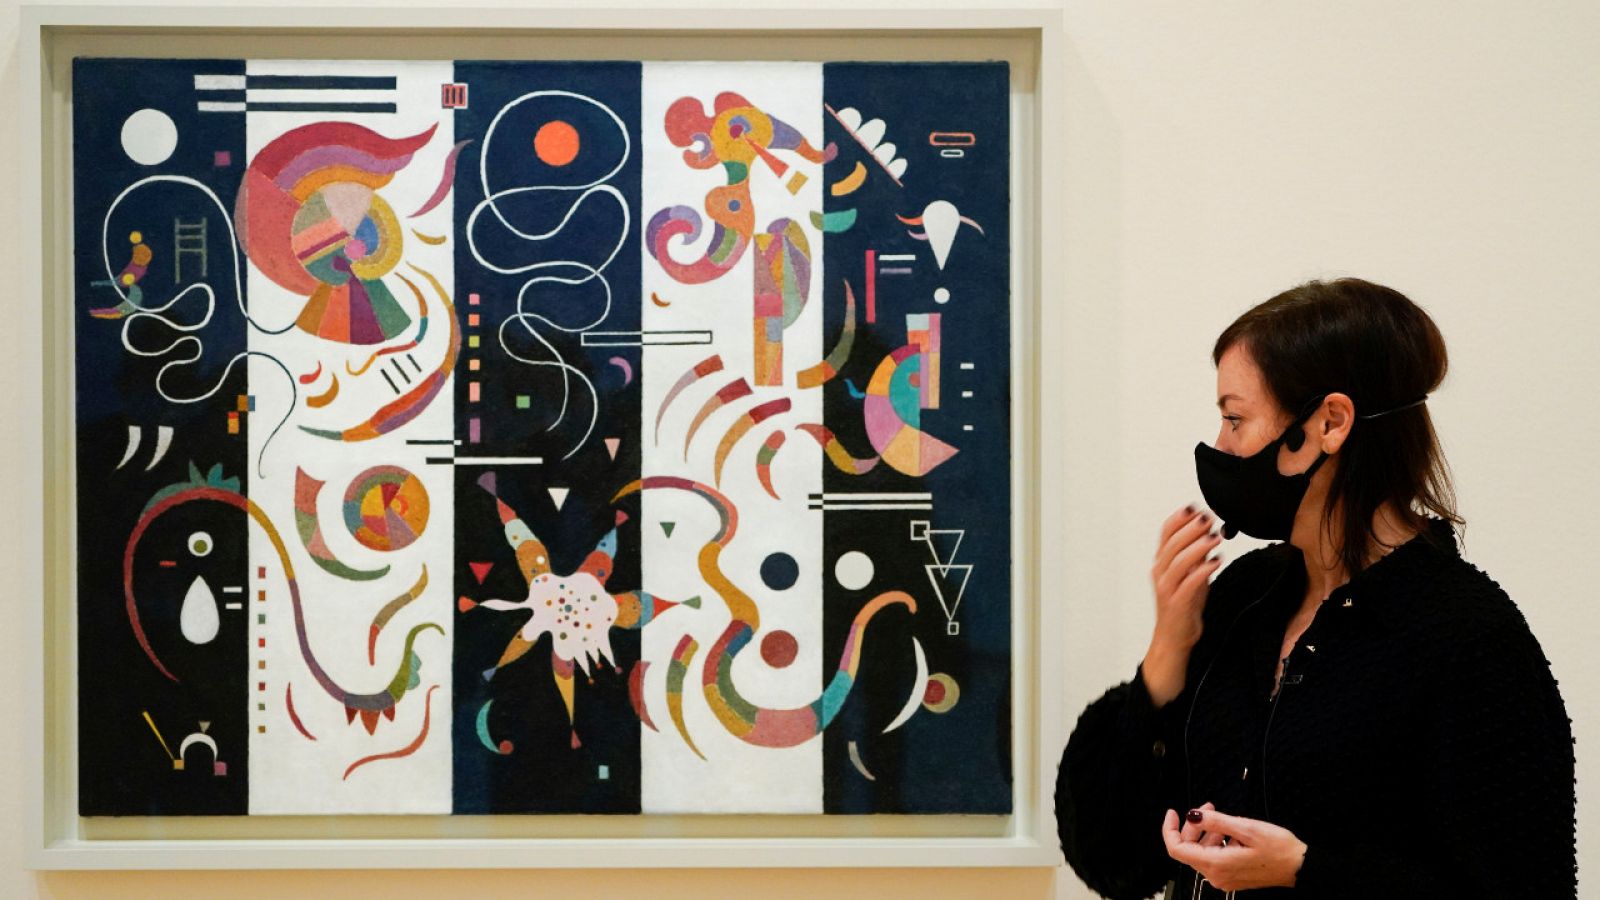 La exposición de Kandinsky estará en el Guggenheim de Bilbao hasta mayo de 2021